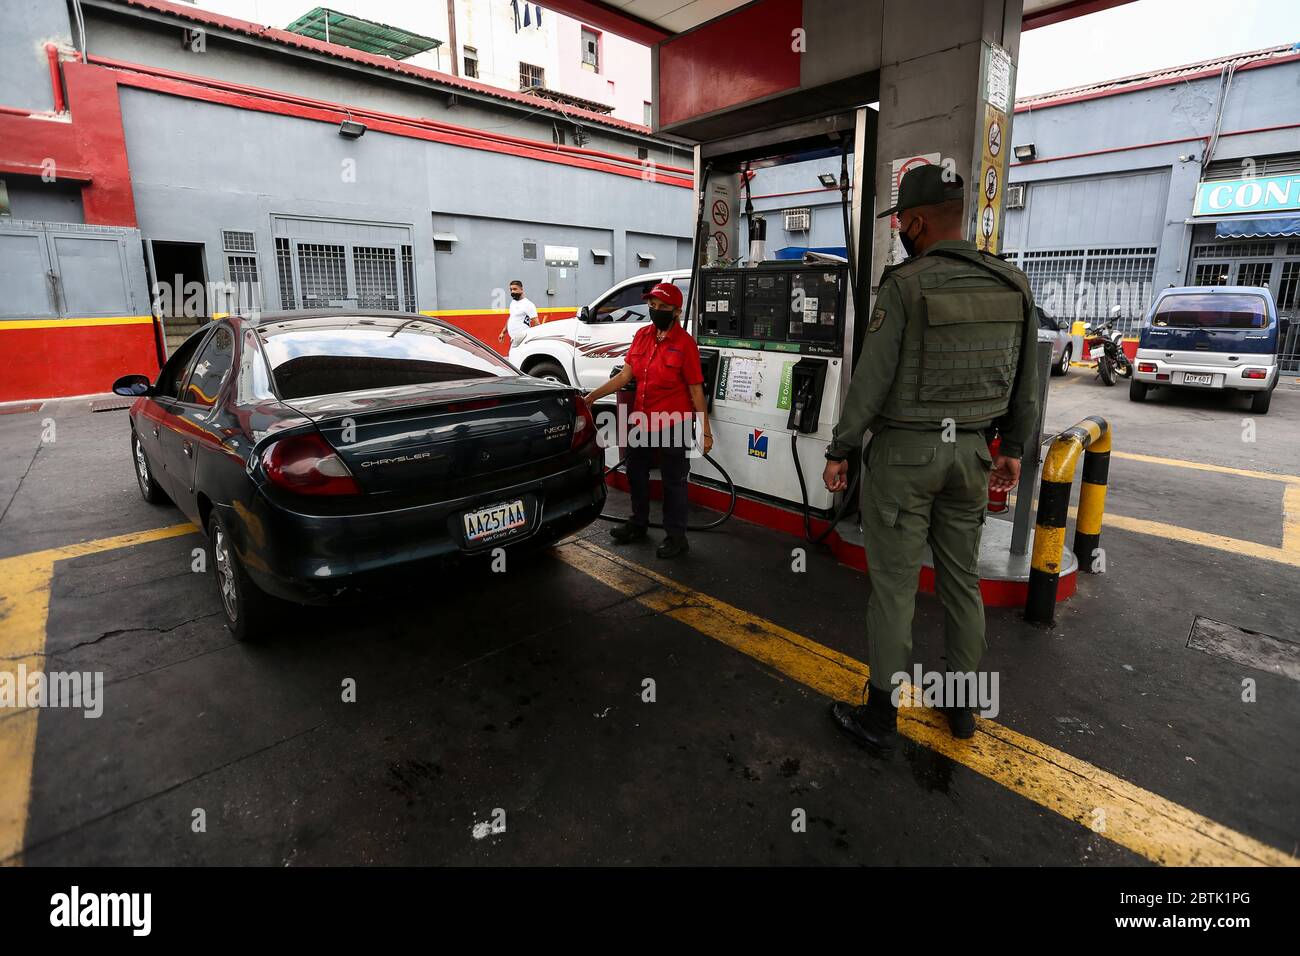 Caracas, Venezuela. 26 mai 2020. Un soldat de la Garde nationale bolivarienne vérifie les documents auprès d'une conductrice avec un garde-bouche qui fait la queue devant une station-service pendant la pénurie de carburant. Le Venezuela possède d'énormes réserves de pétrole, mais en raison d'un manque de capacité de raffinage, il a beaucoup trop peu d'essence. Selon les informations iraniennes, le premier de plusieurs pétroliers iraniens avec de l'essence pour le Venezuela a atteint le pays sud-américain. Les voitures sont actuellement autorisées à remplir jusqu'à 30 litres de carburant. Crédit : Pedro Rances Mattey/dpa/Alay Live News Banque D'Images